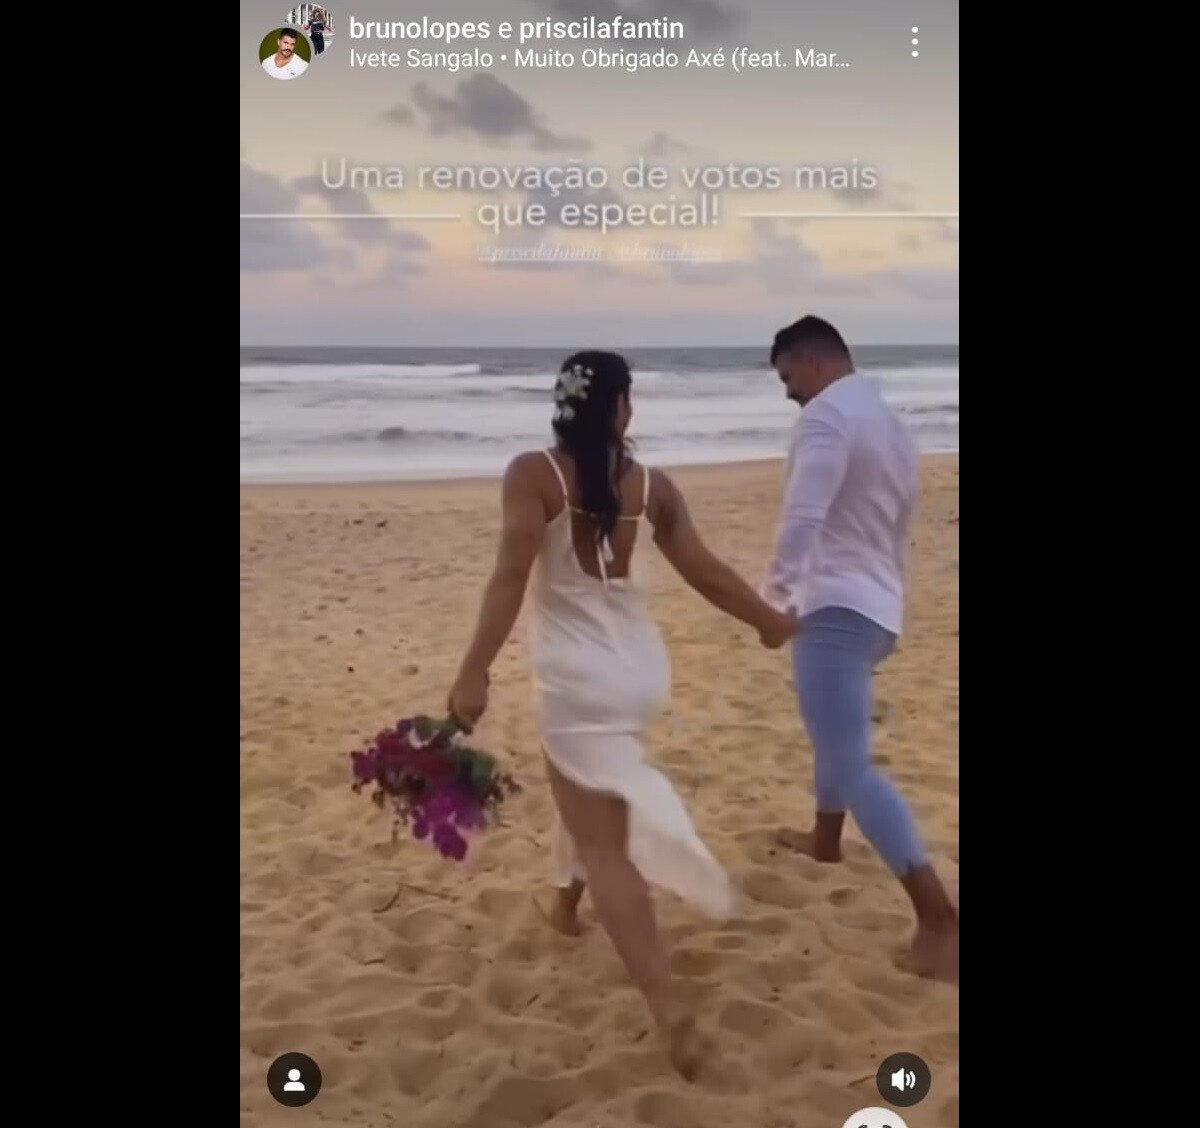 Foto Priscila Fantin E Bruno Lopes Se Casaram Na Praia De P S Descal Os Em Um Lindo Fim De